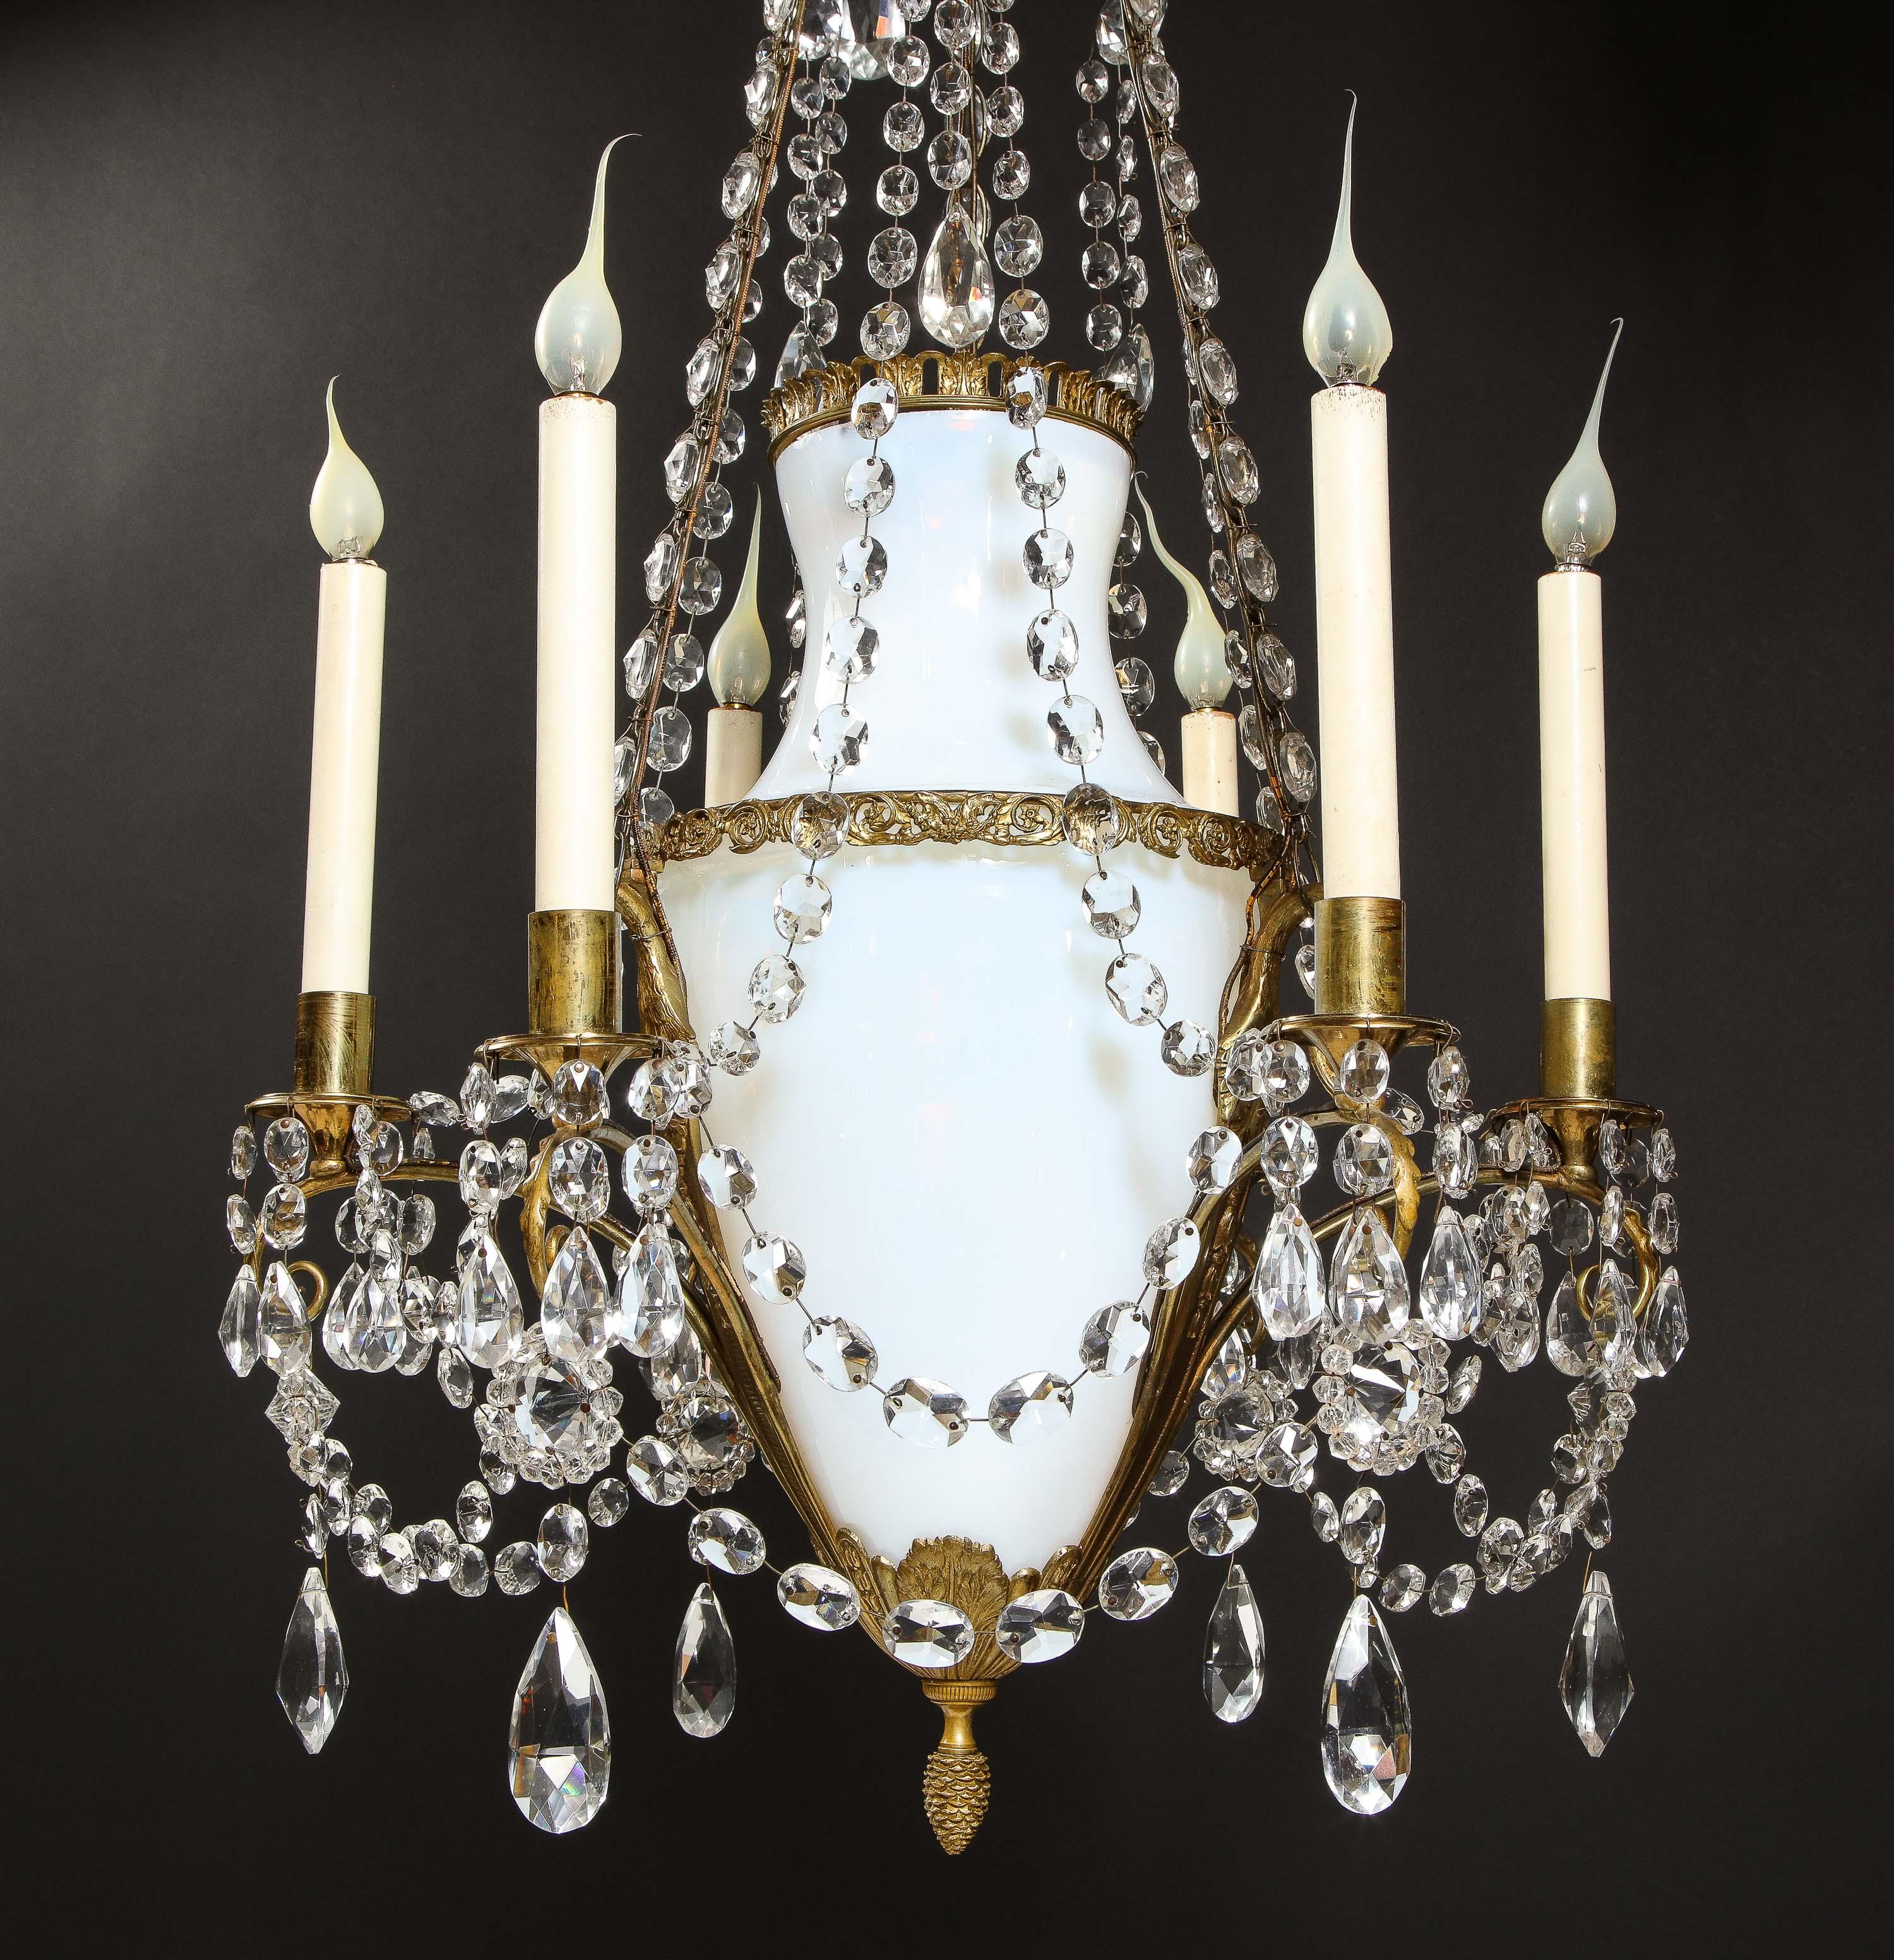 Ein feiner antiker russischer neoklassizistischer Kronleuchter aus vergoldeter Bronze, weißem Opalglas und Kristall mit mehreren Lichtern von hervorragender Qualität und Detailtreue. Dieser einzigartige neoklassizistische Kronleuchter ist mit